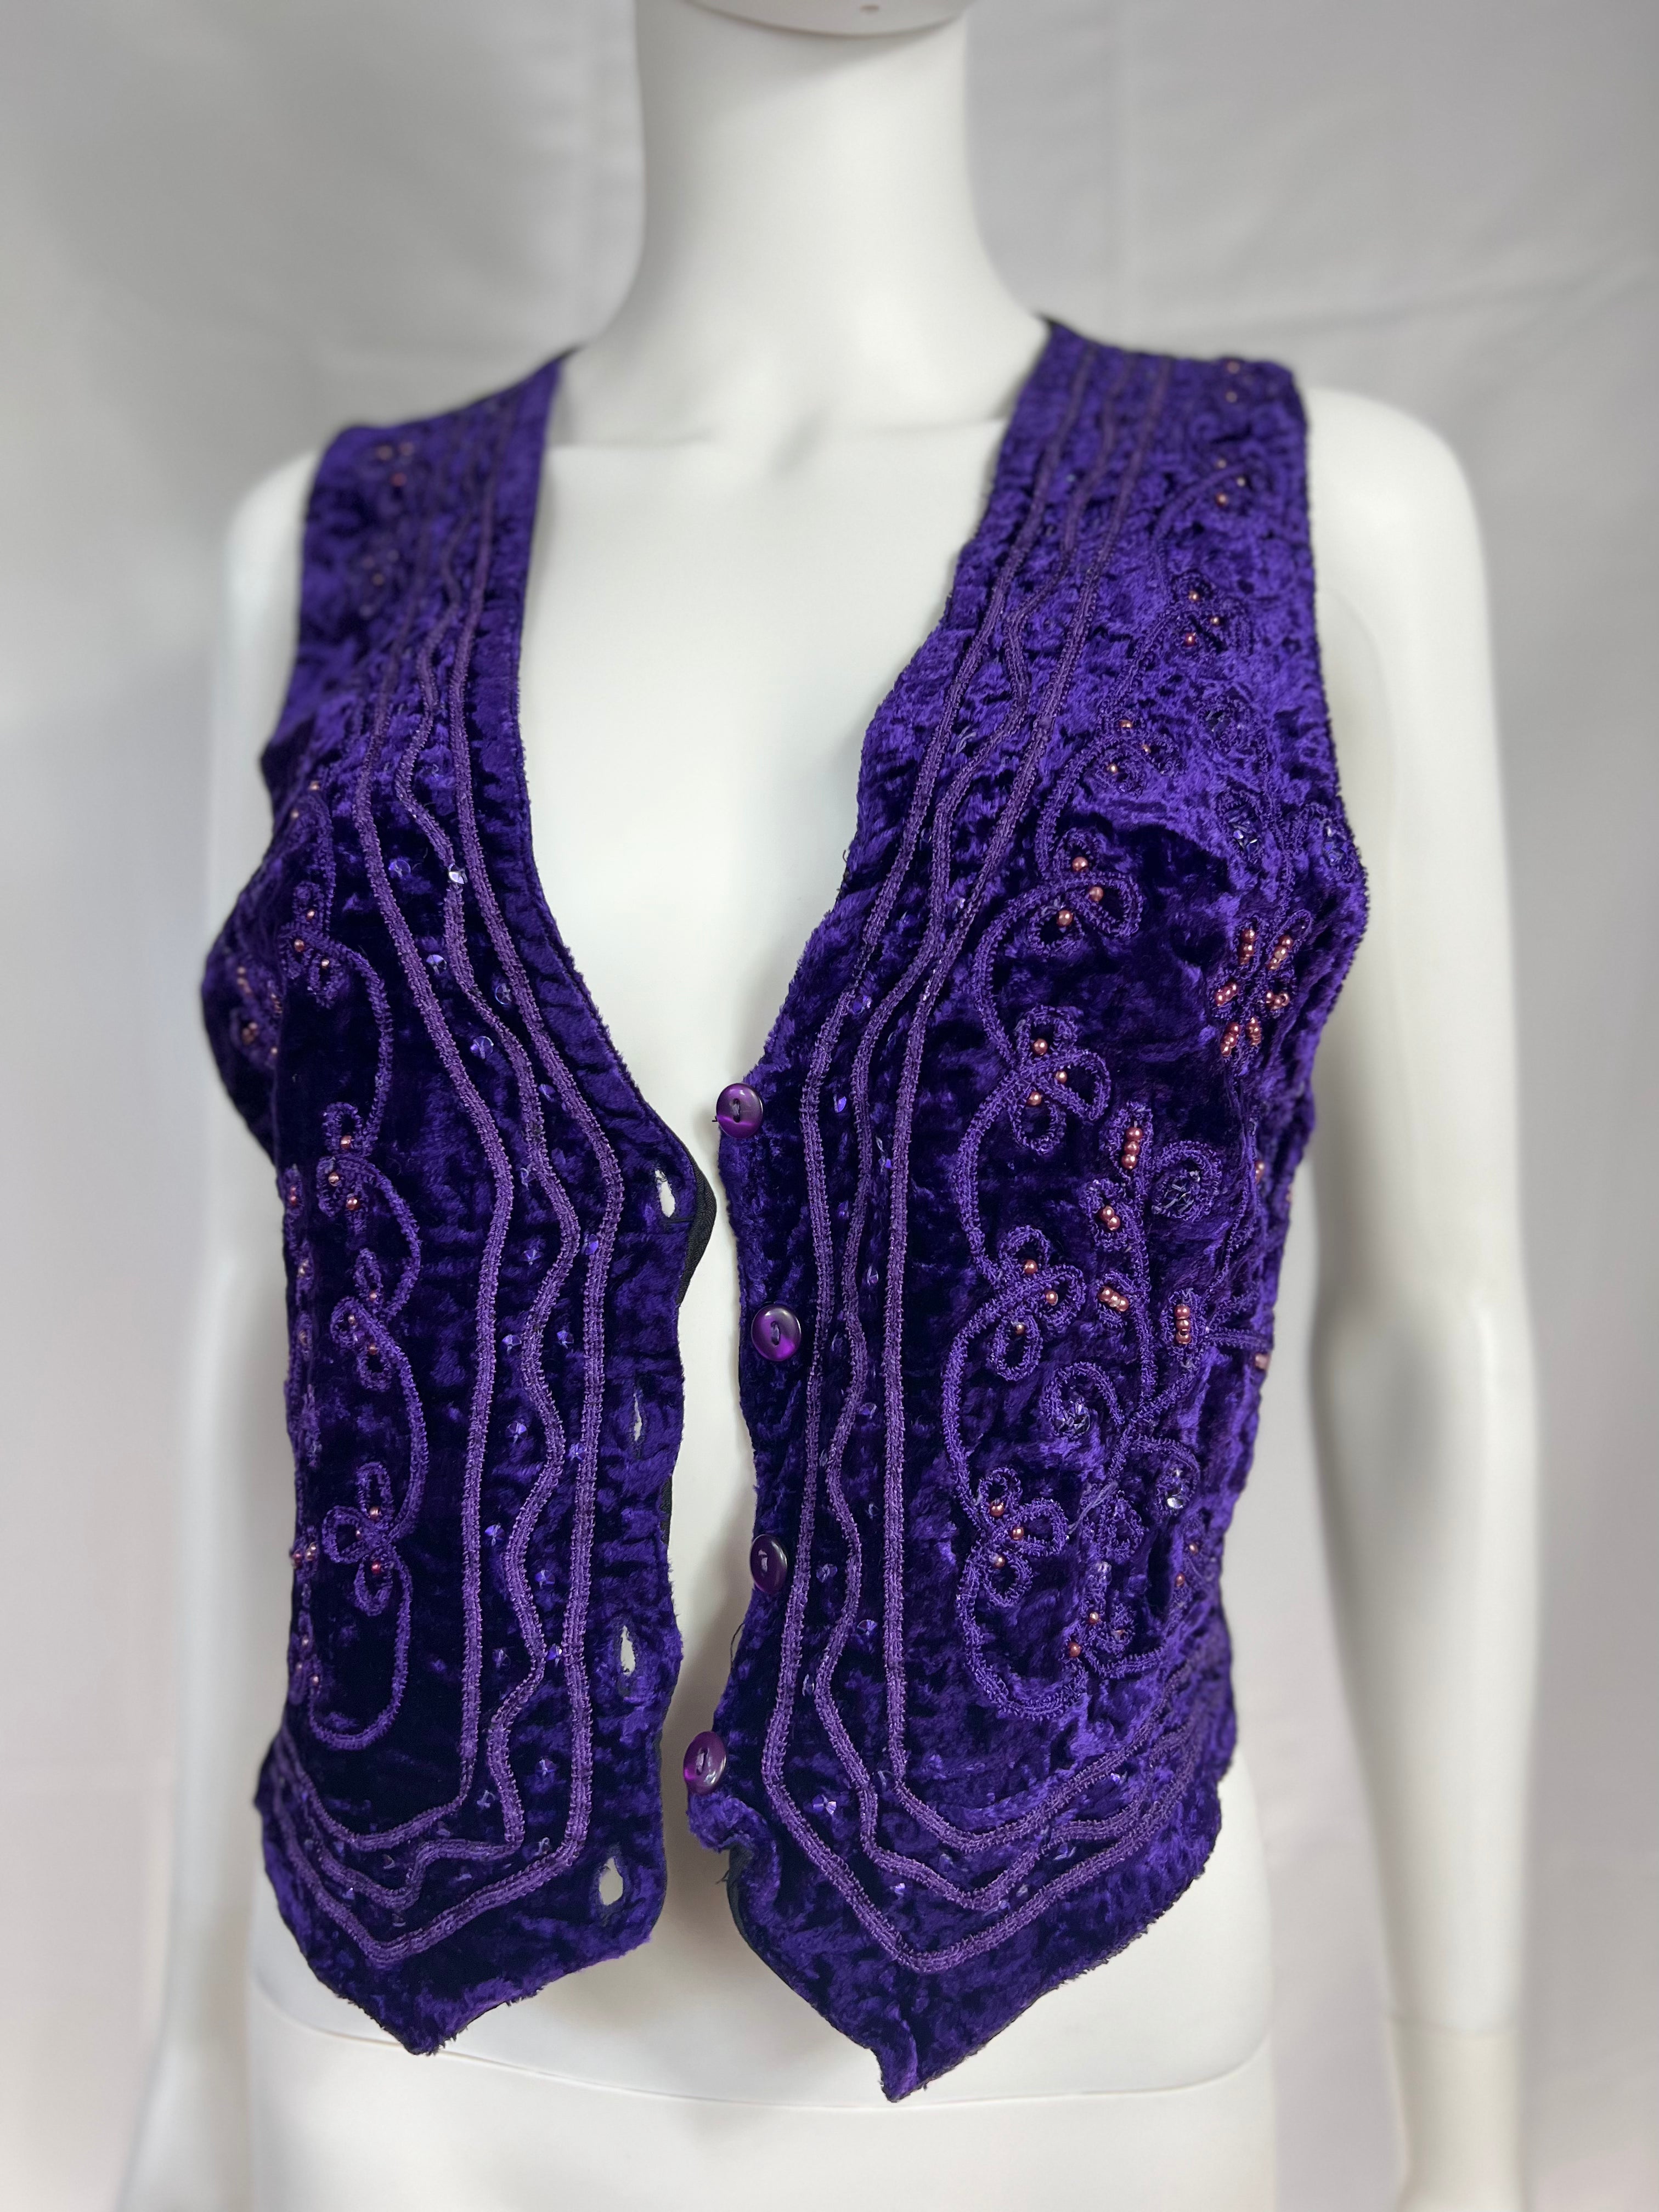 1990's Velvet Purple Vest